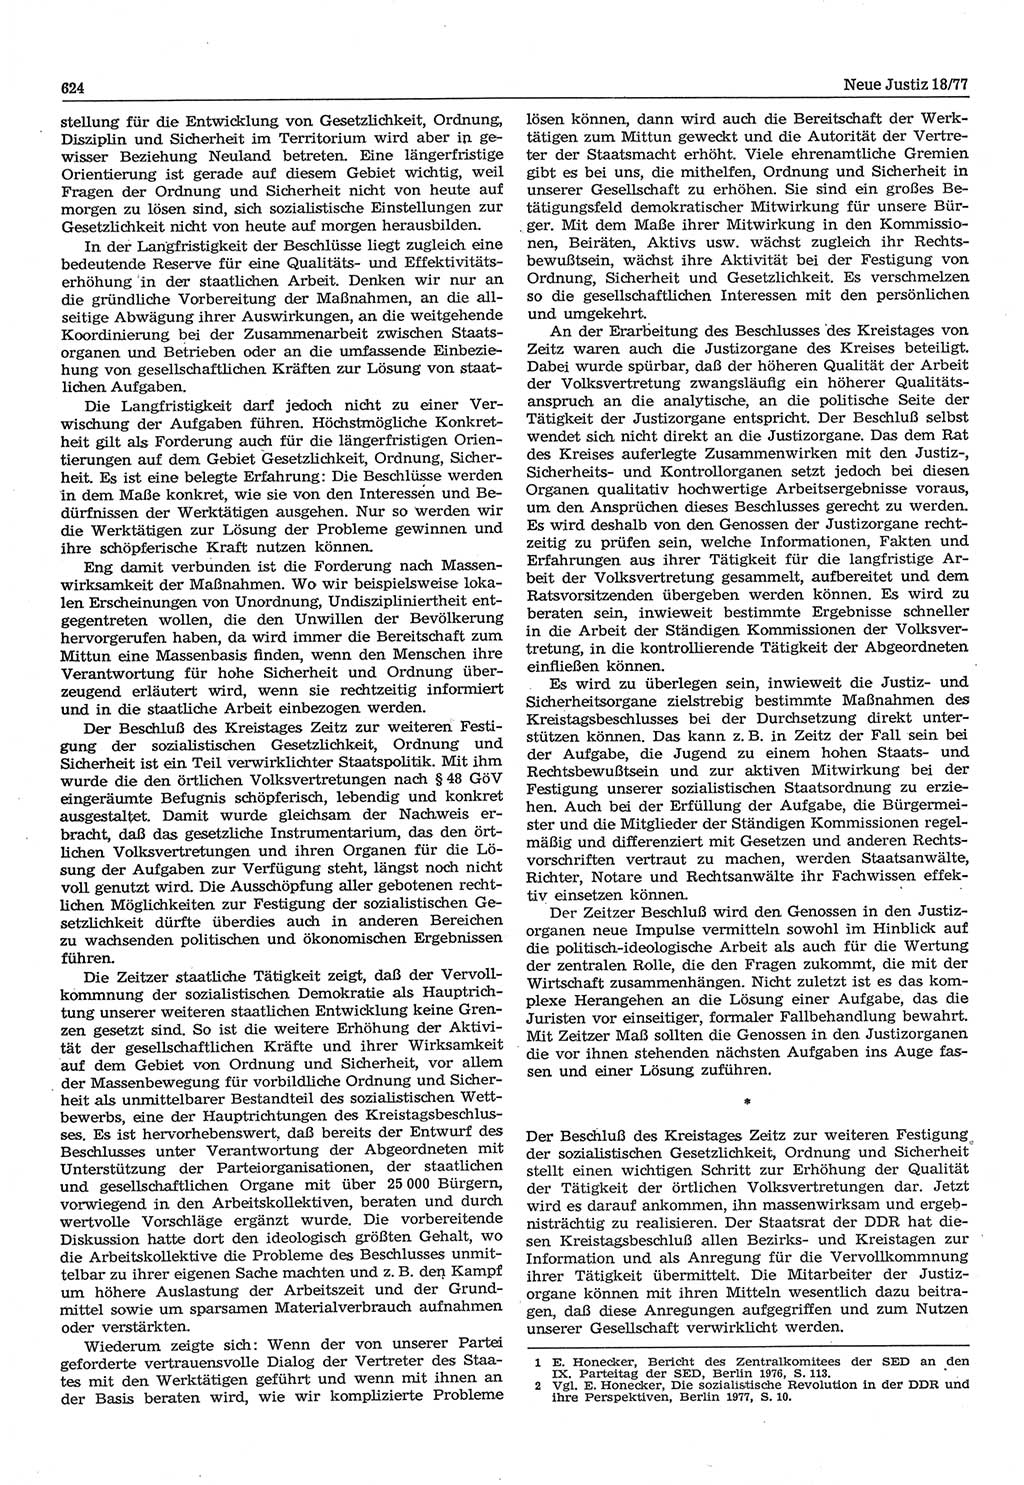 Neue Justiz (NJ), Zeitschrift für Recht und Rechtswissenschaft-Zeitschrift, sozialistisches Recht und Gesetzlichkeit, 31. Jahrgang 1977, Seite 624 (NJ DDR 1977, S. 624)